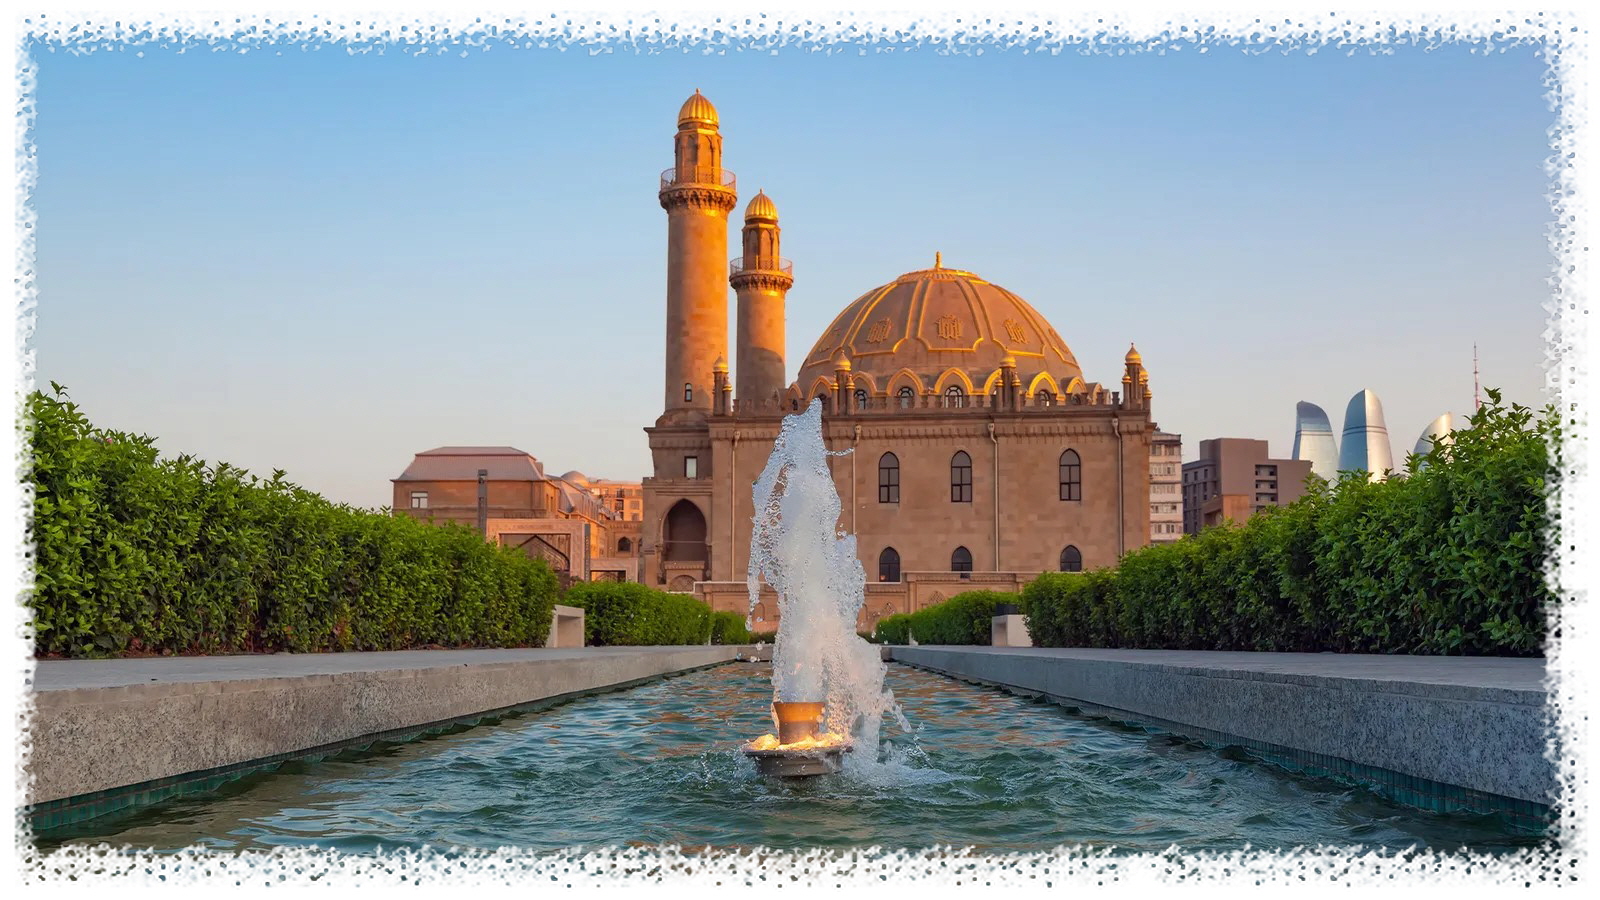 타자 피르 모스크(Taza Pir Mosque)는 이슬람 세계 전반에서 디자인 영감을 얻었습니다